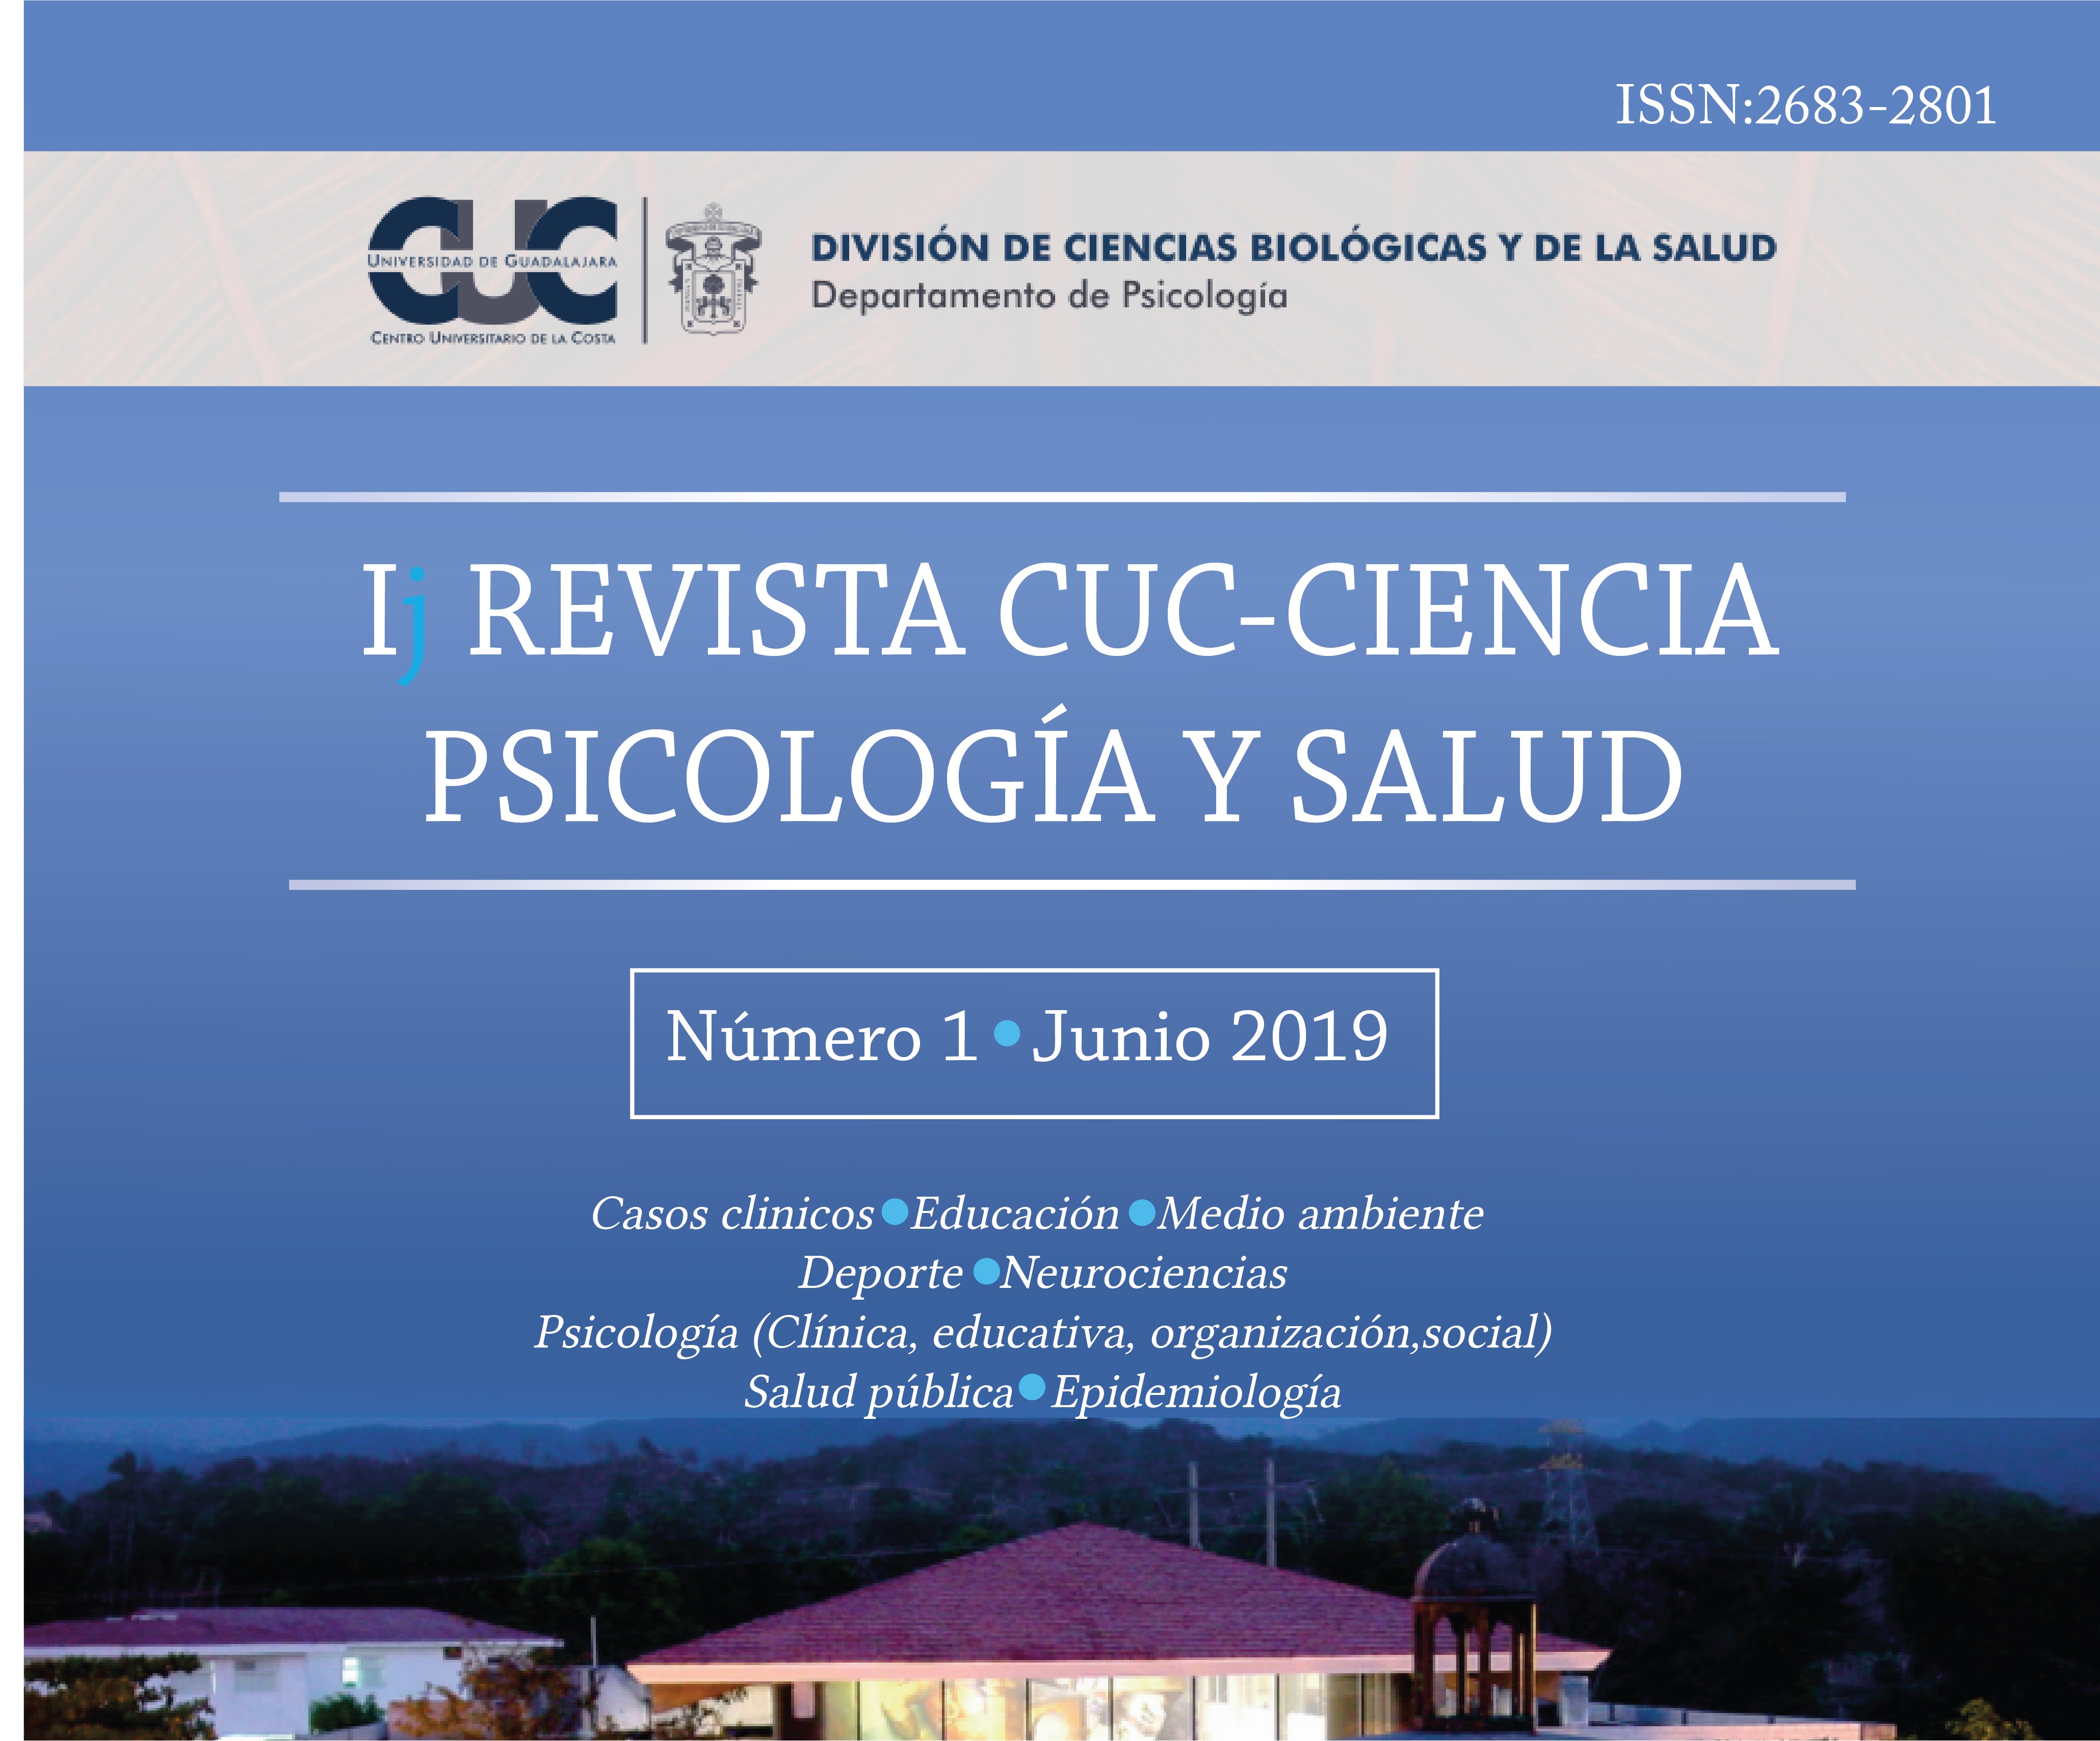 Revista cuc ciencia psicologia y salud digital - 2019